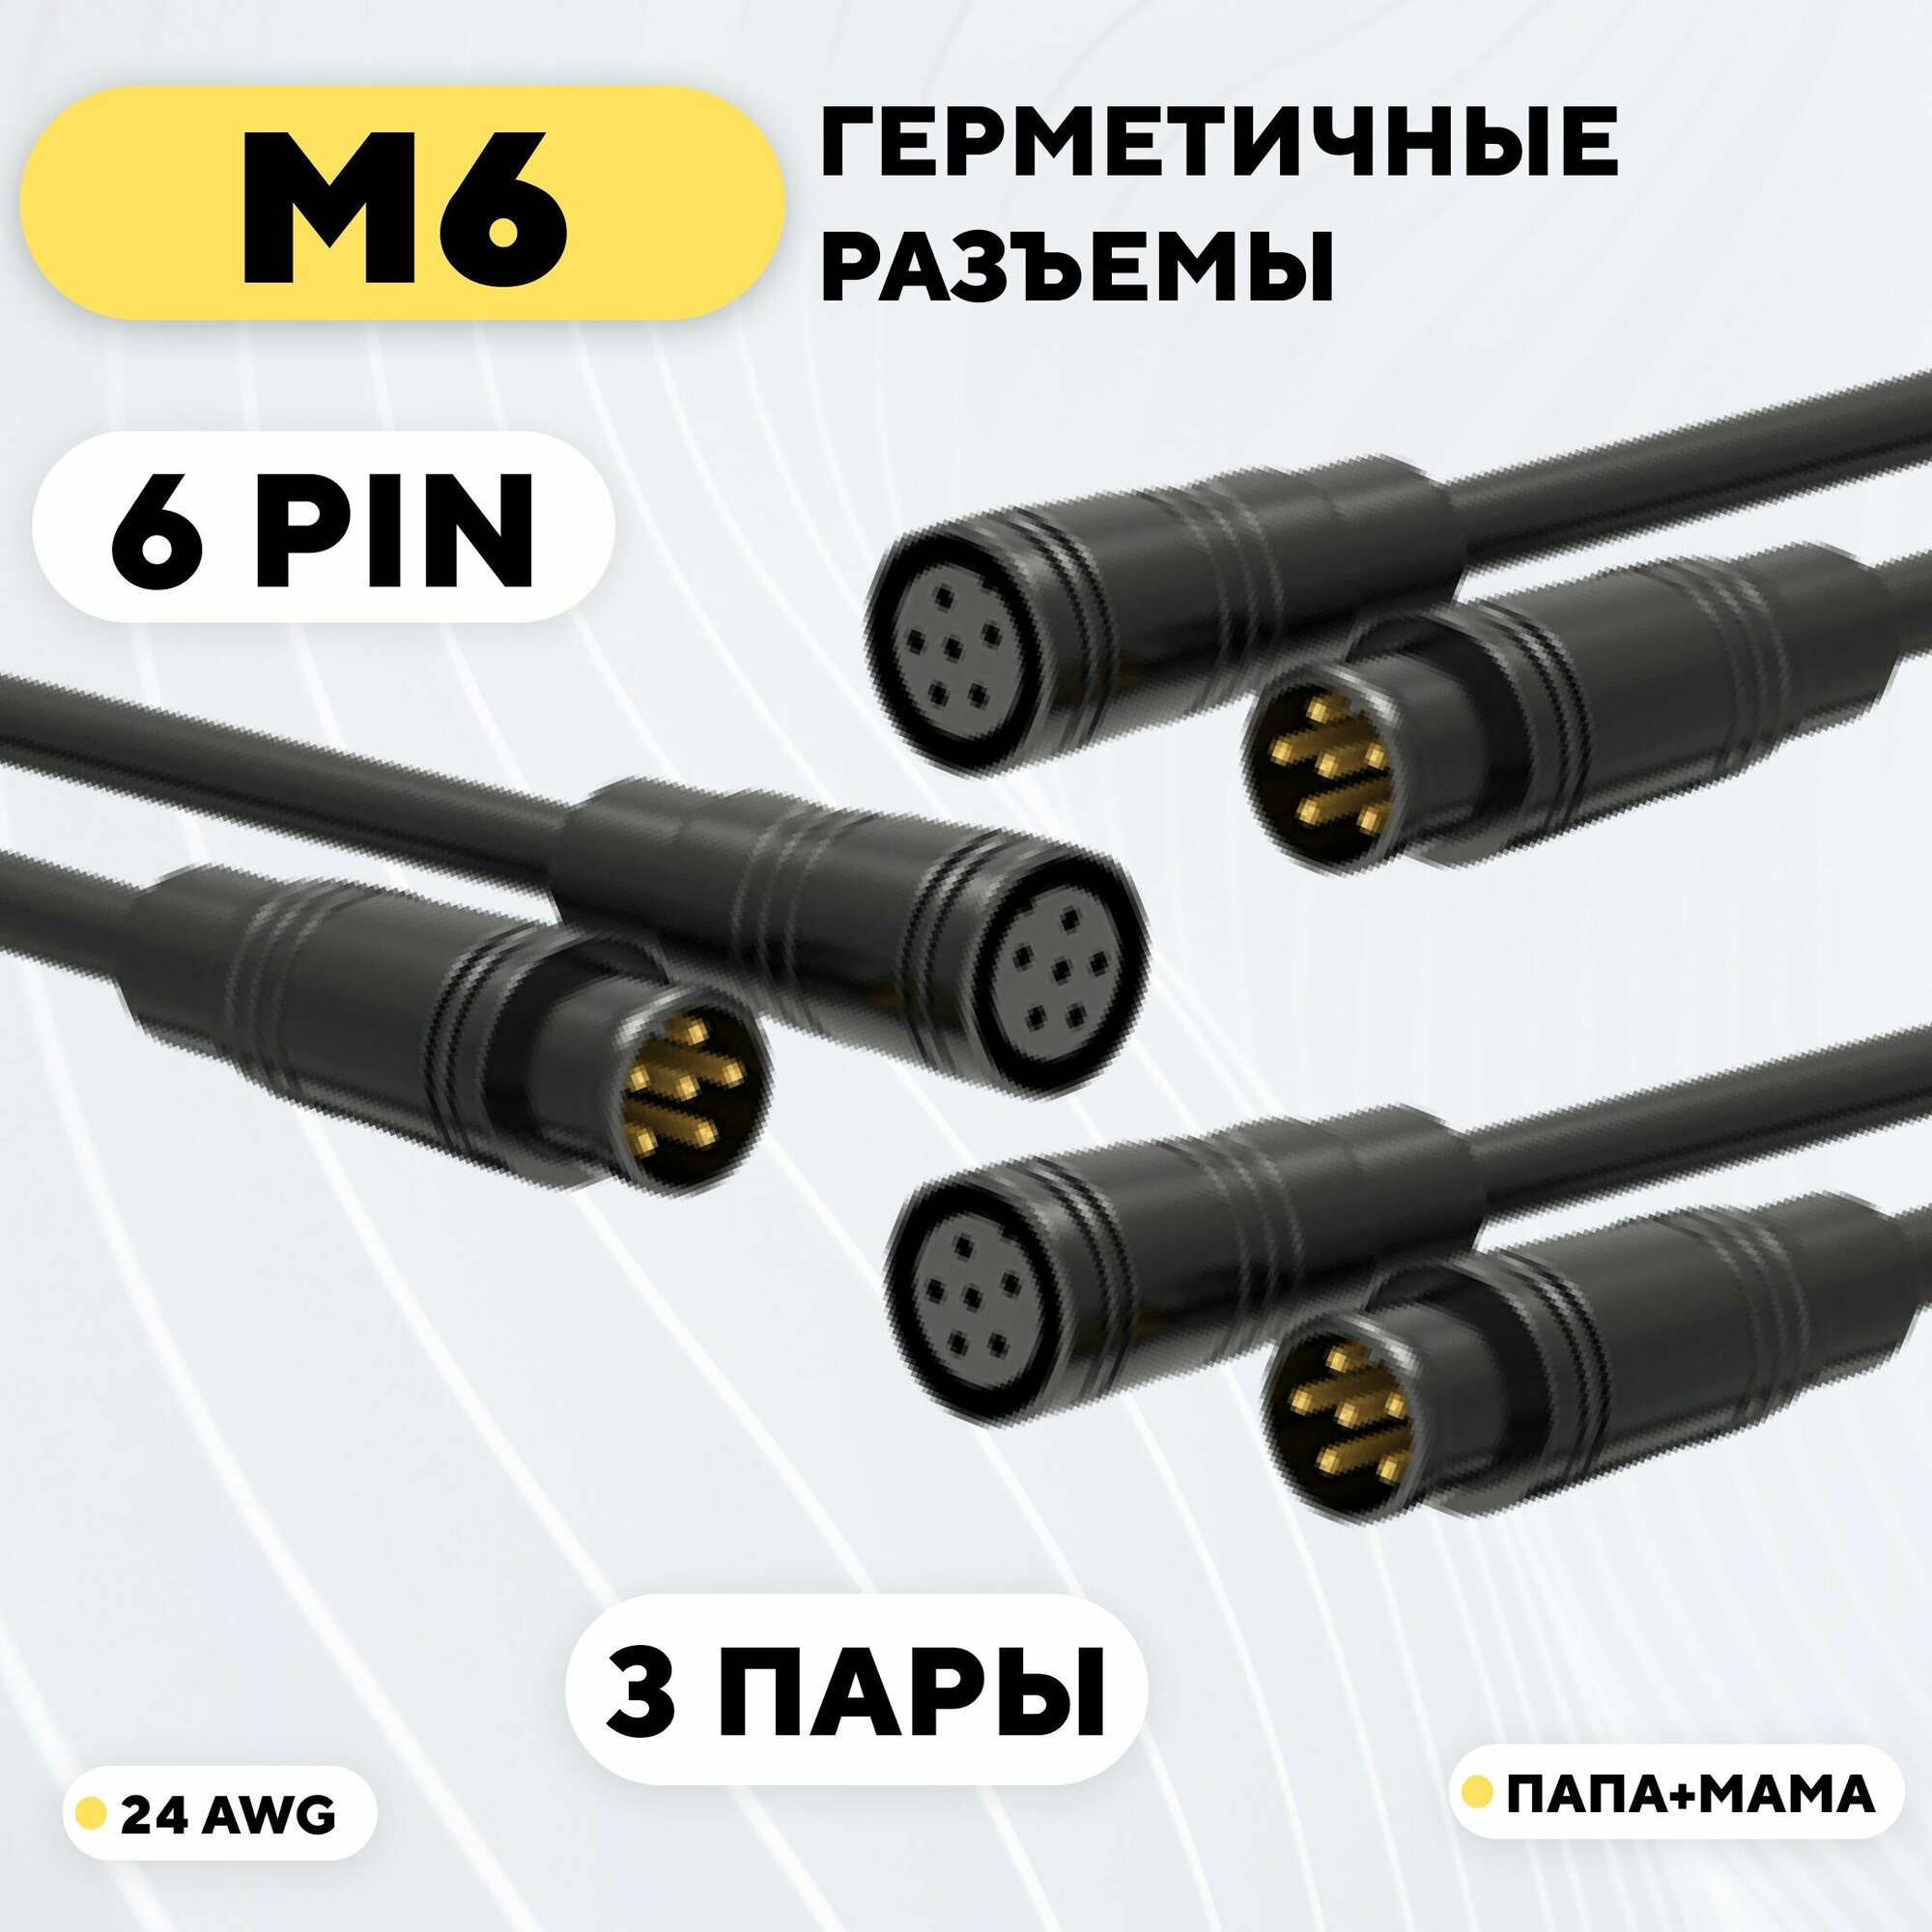 Разъем M6 водонепроницаемый коннектор 6 pin (комплект, 3 пары)